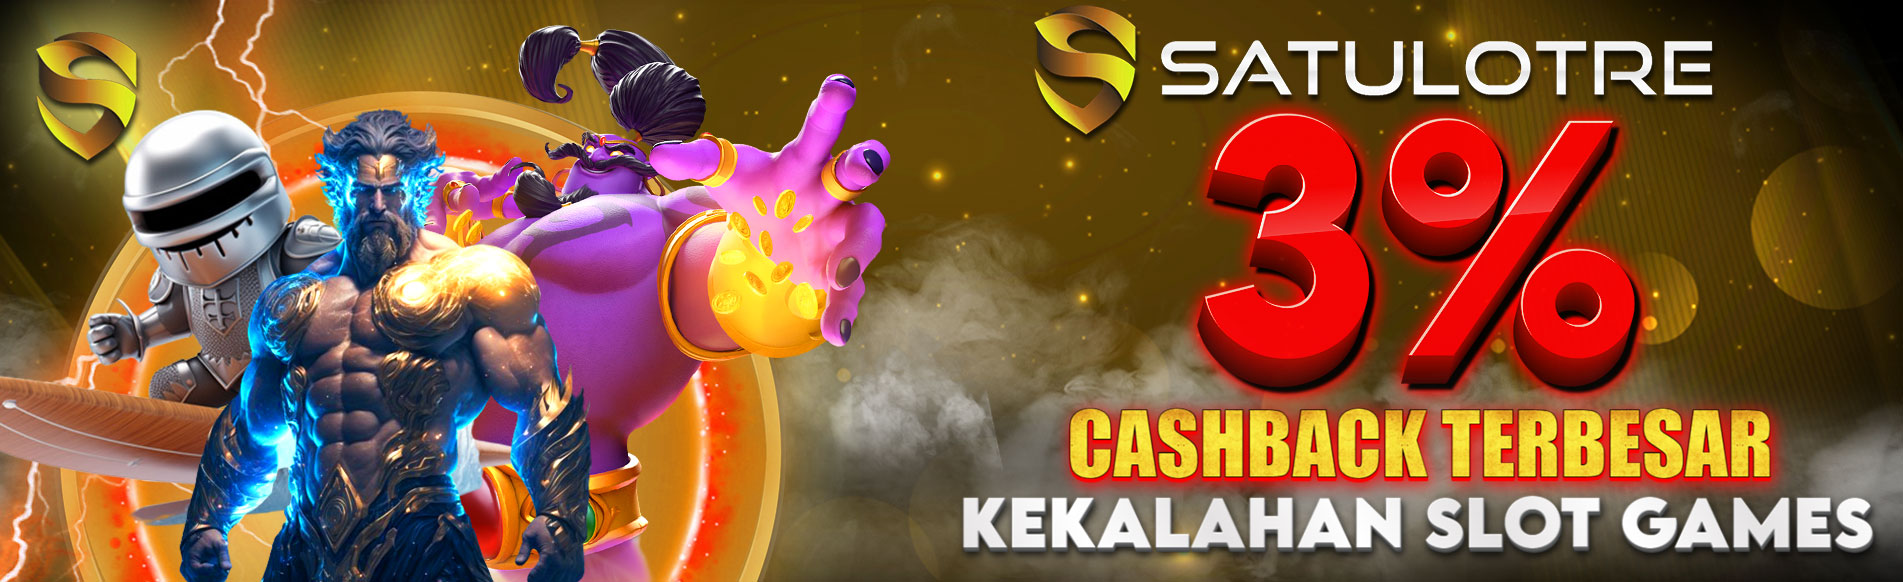 Bonus Cashback Kekalahan Slot Games 3%